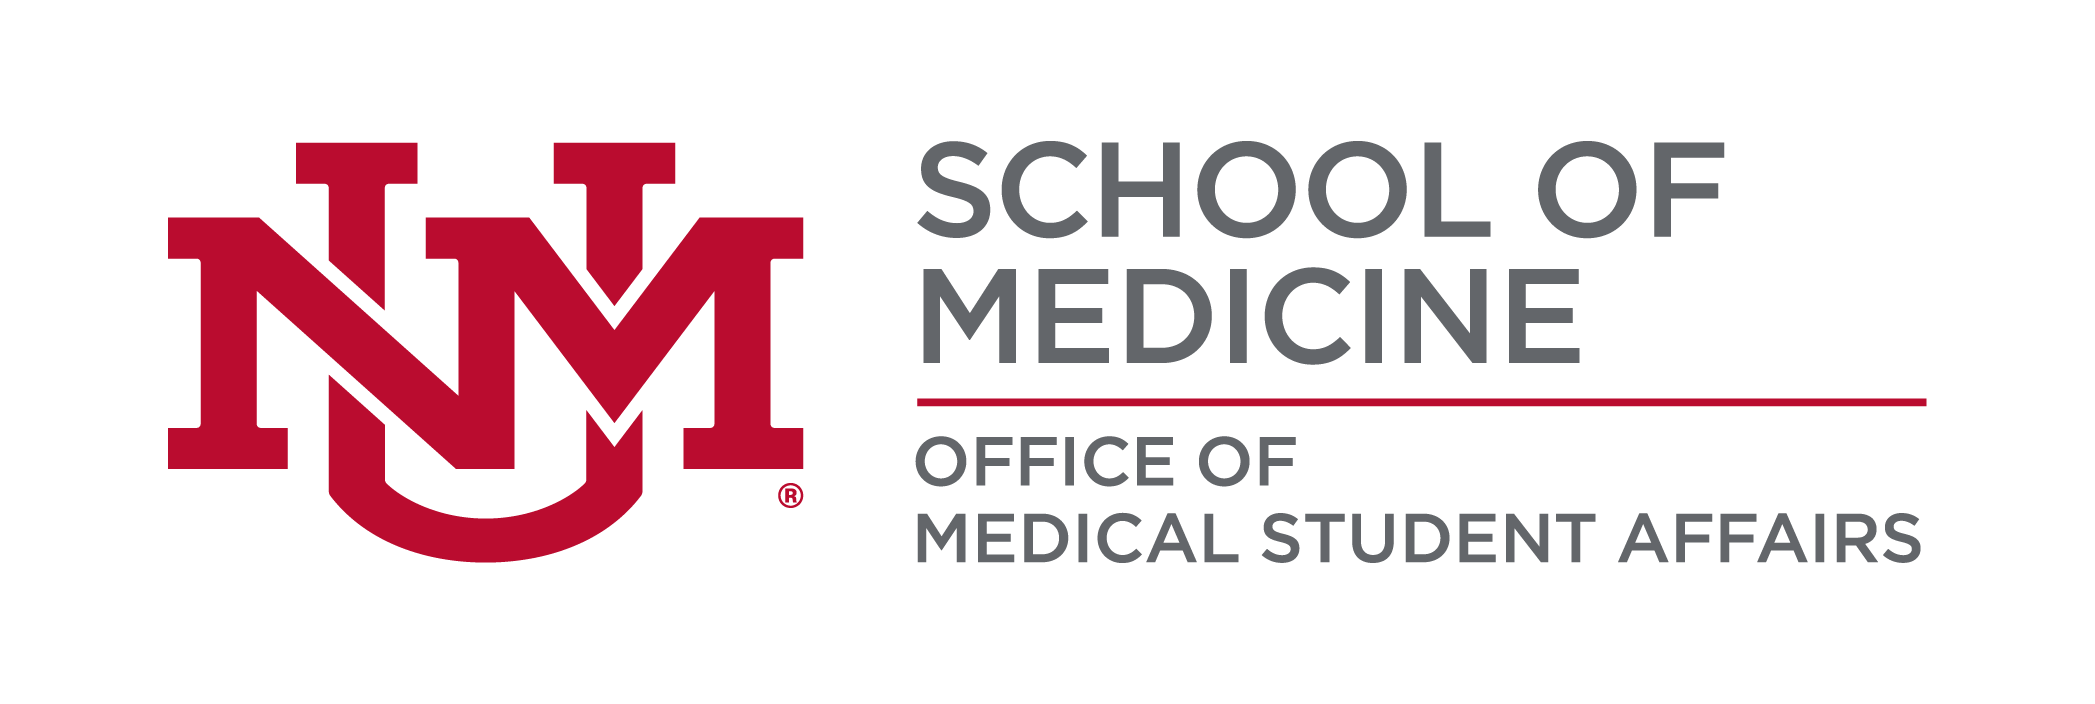 Trường Y khoa UNM - Văn phòng Công tác Sinh viên Y khoa Logo.